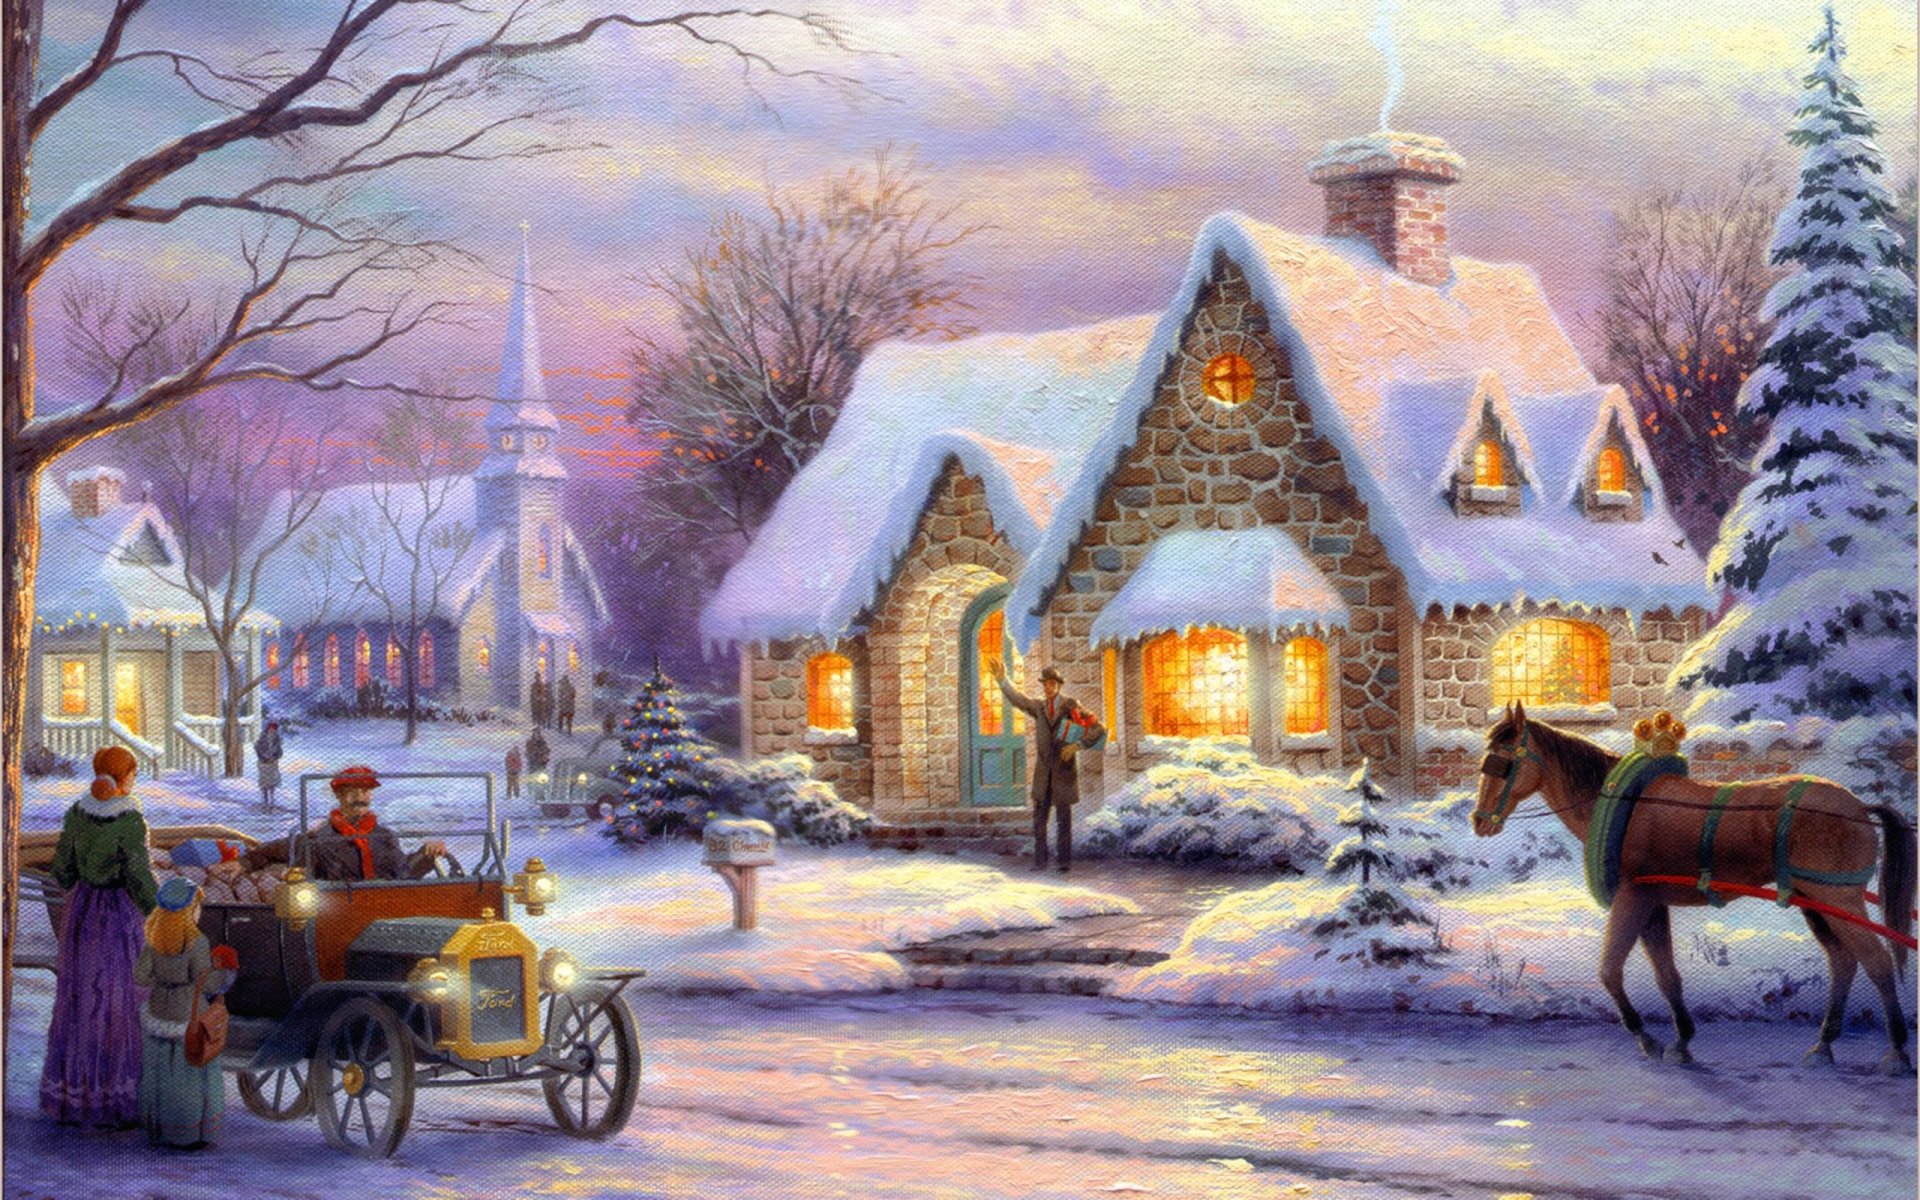 томас кинкейд воспоминания рождество искусство живопись зимние снег коттедж рождество новый год зима городок коттеджи елки почтовый ящик номер свет в окнах машина ретро конь лошадь люди приветствие по